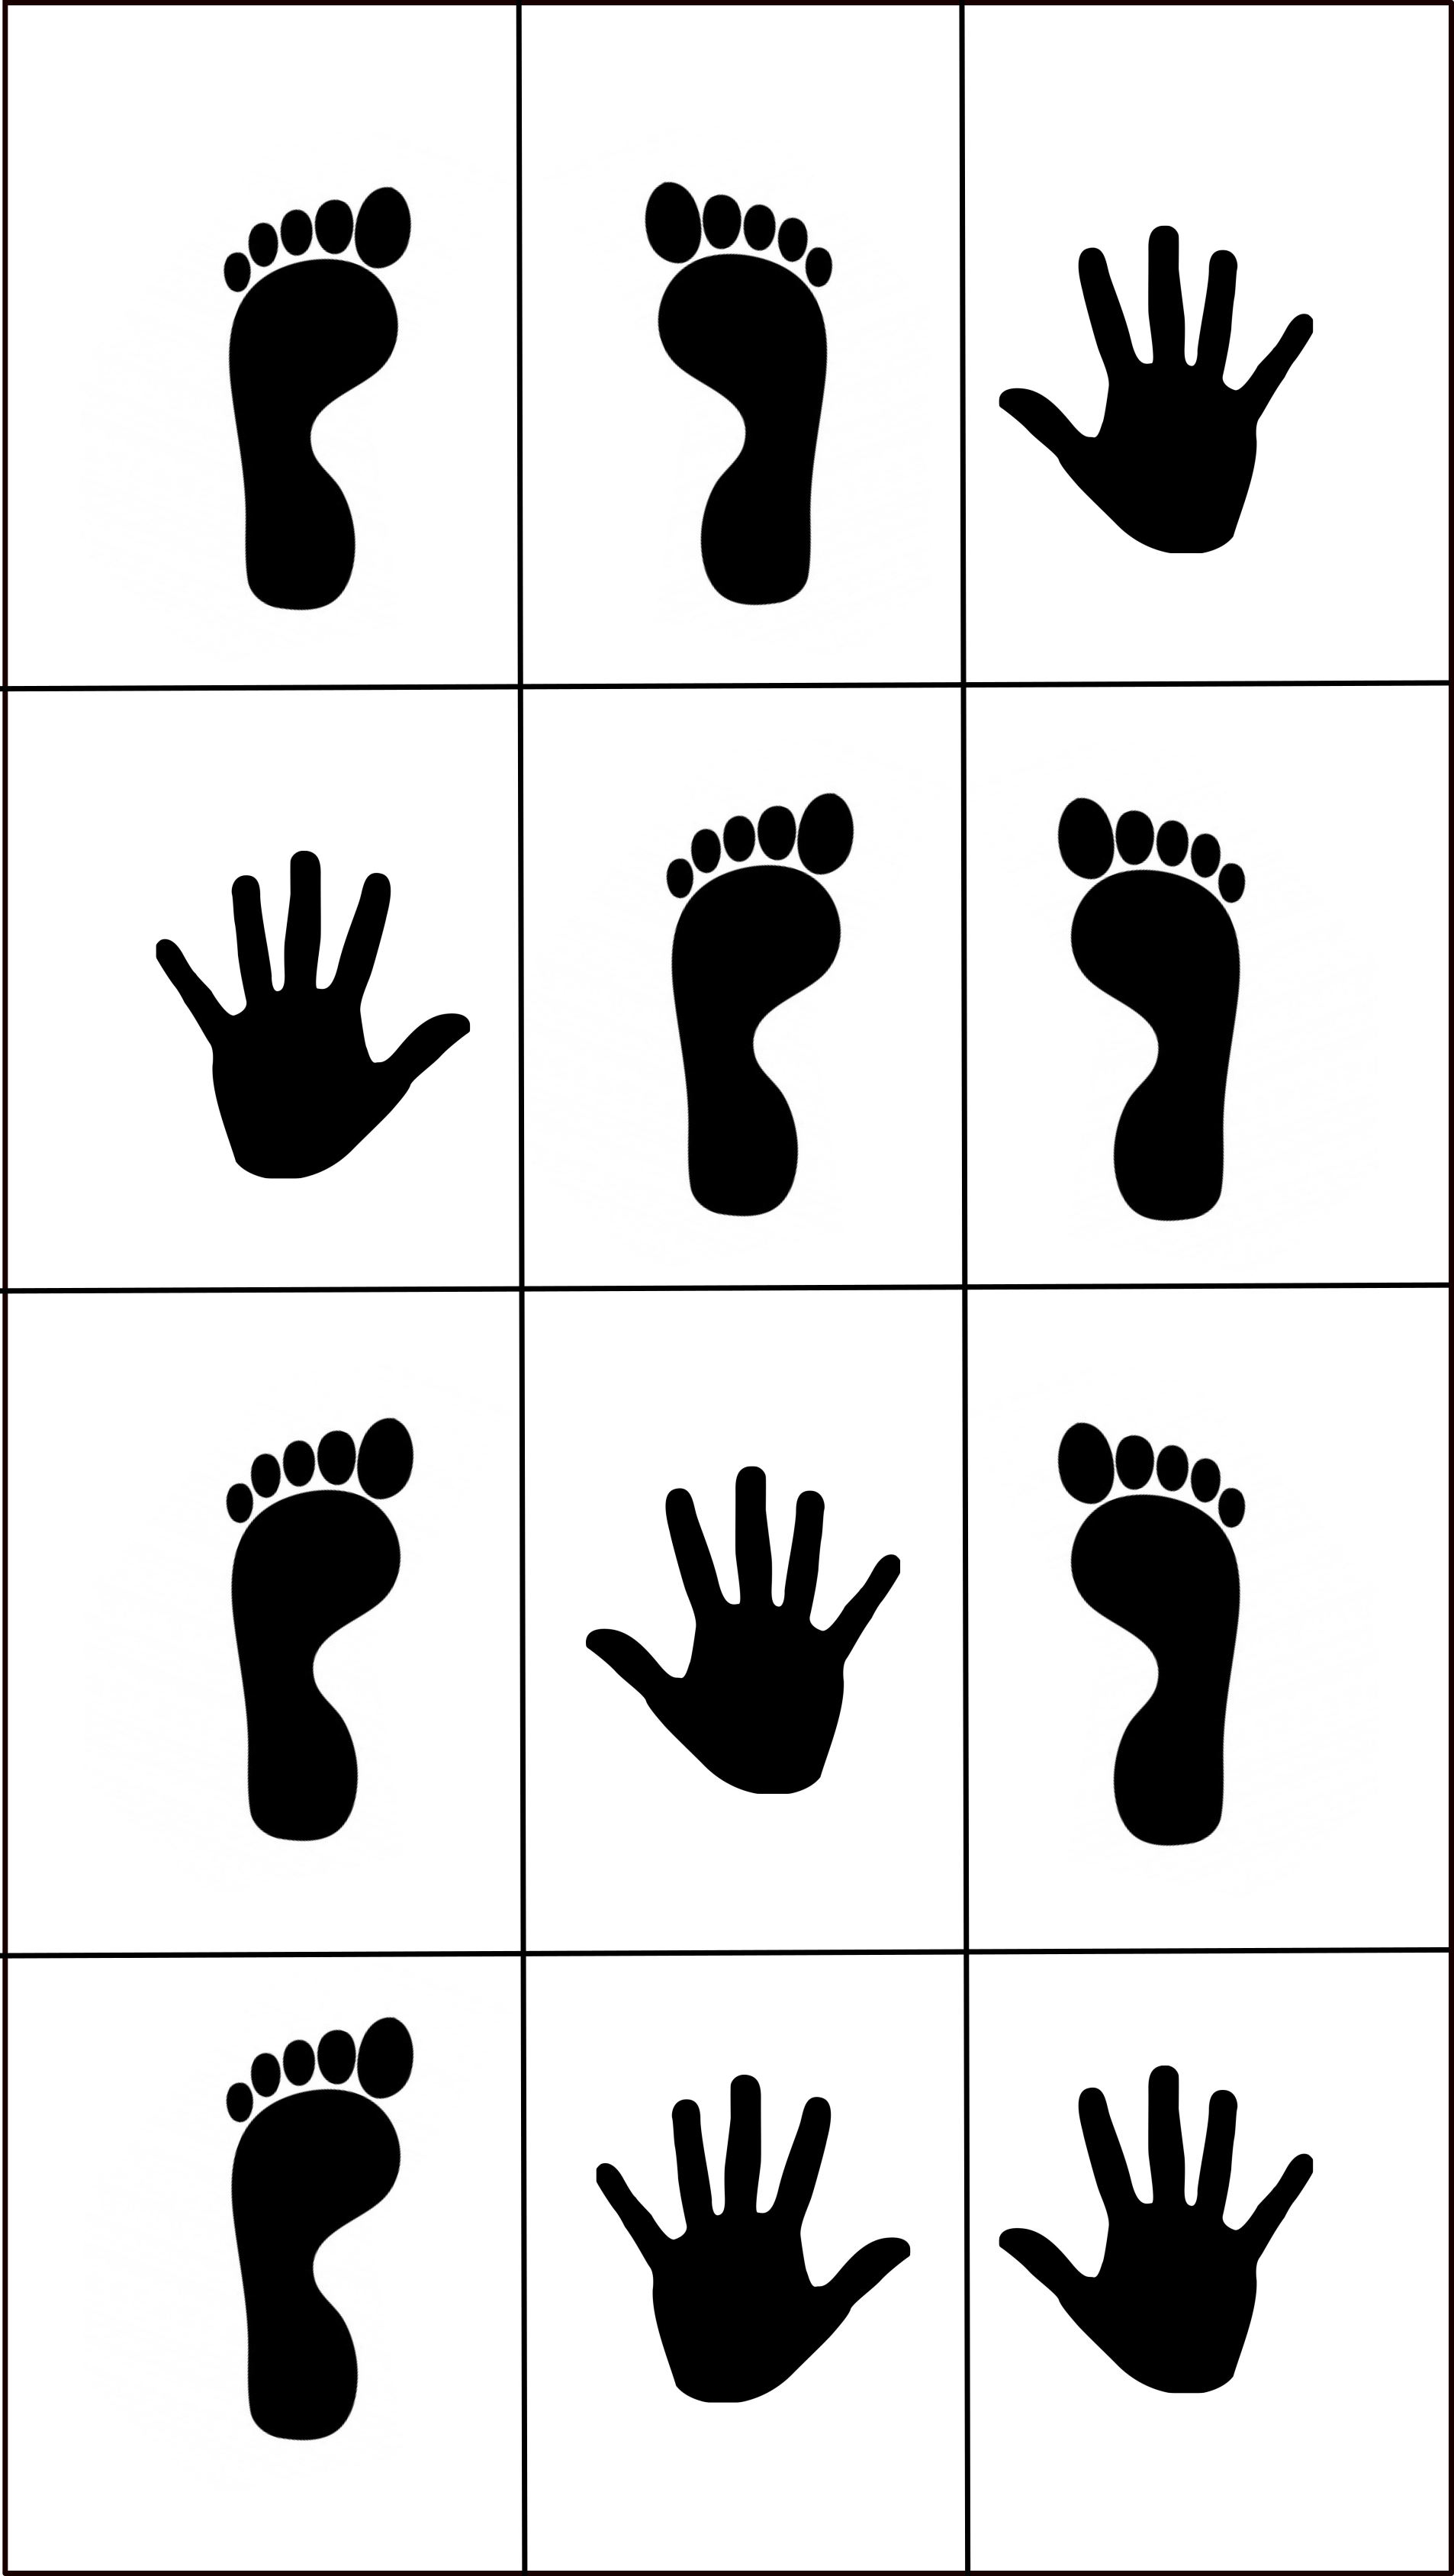 Hands-Feet Jumping Game - blogulo.com